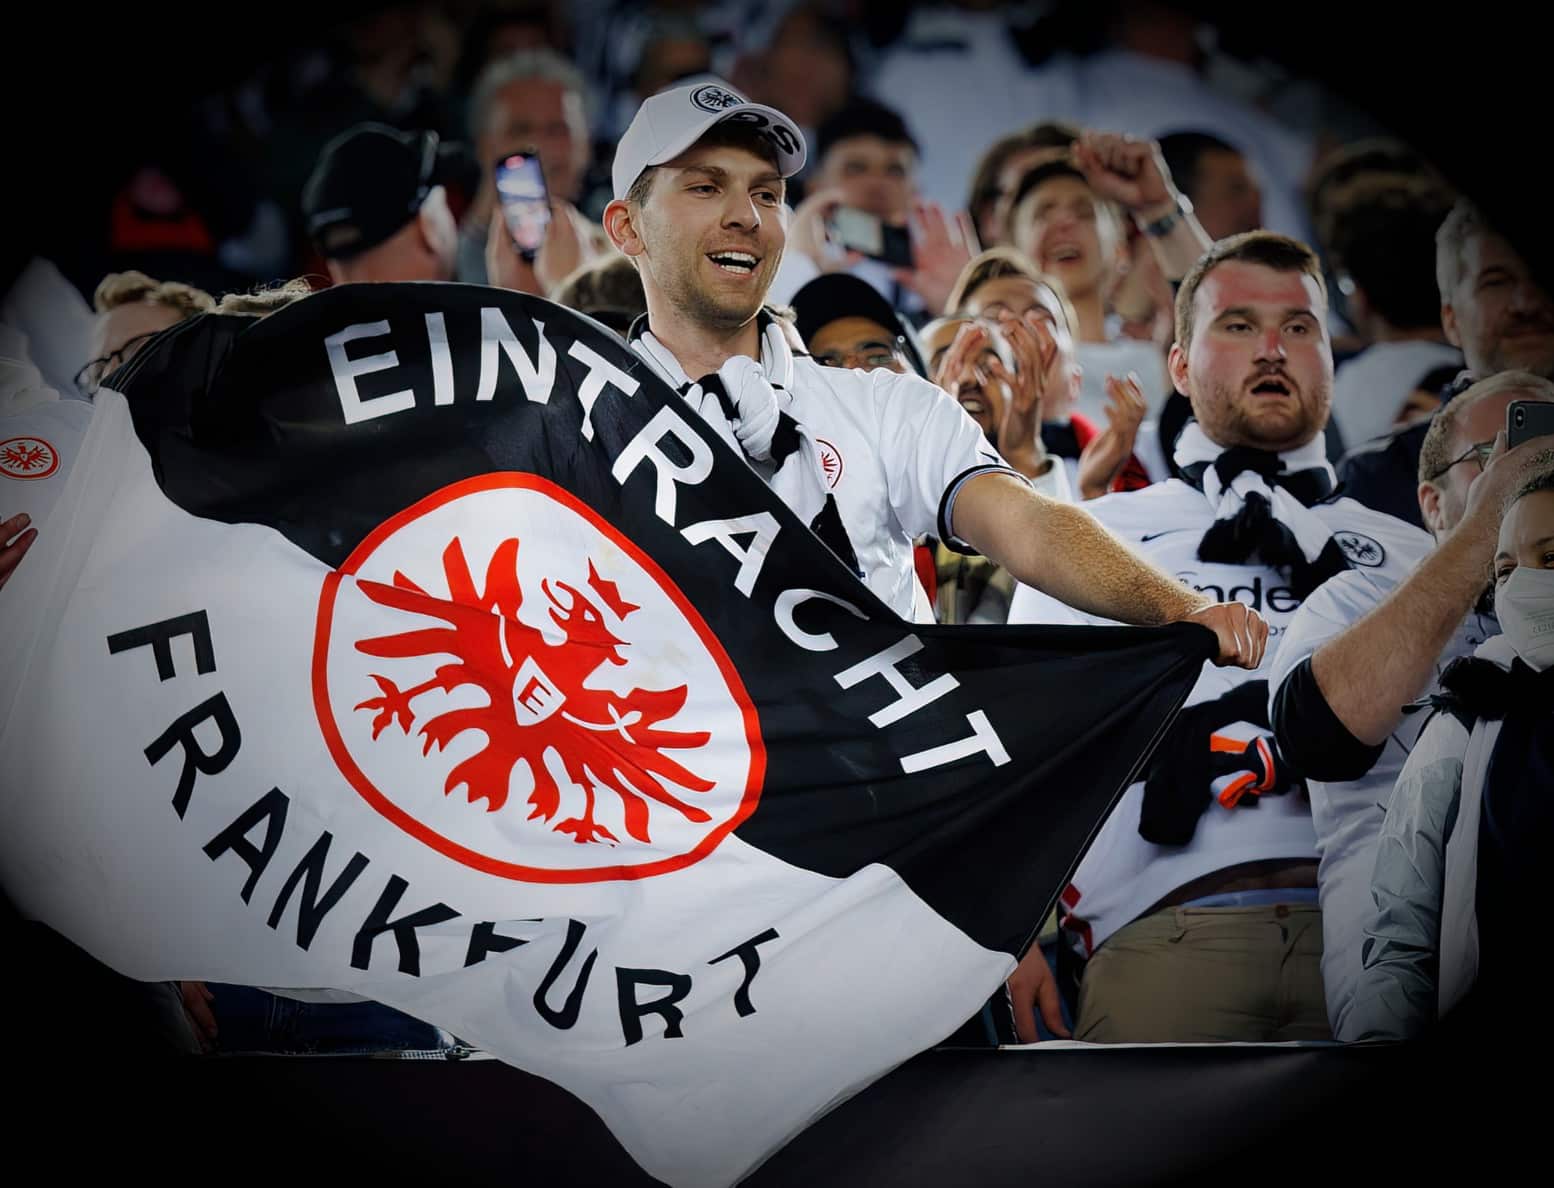 Fans von Eintracht Frankfurt, Archivbild